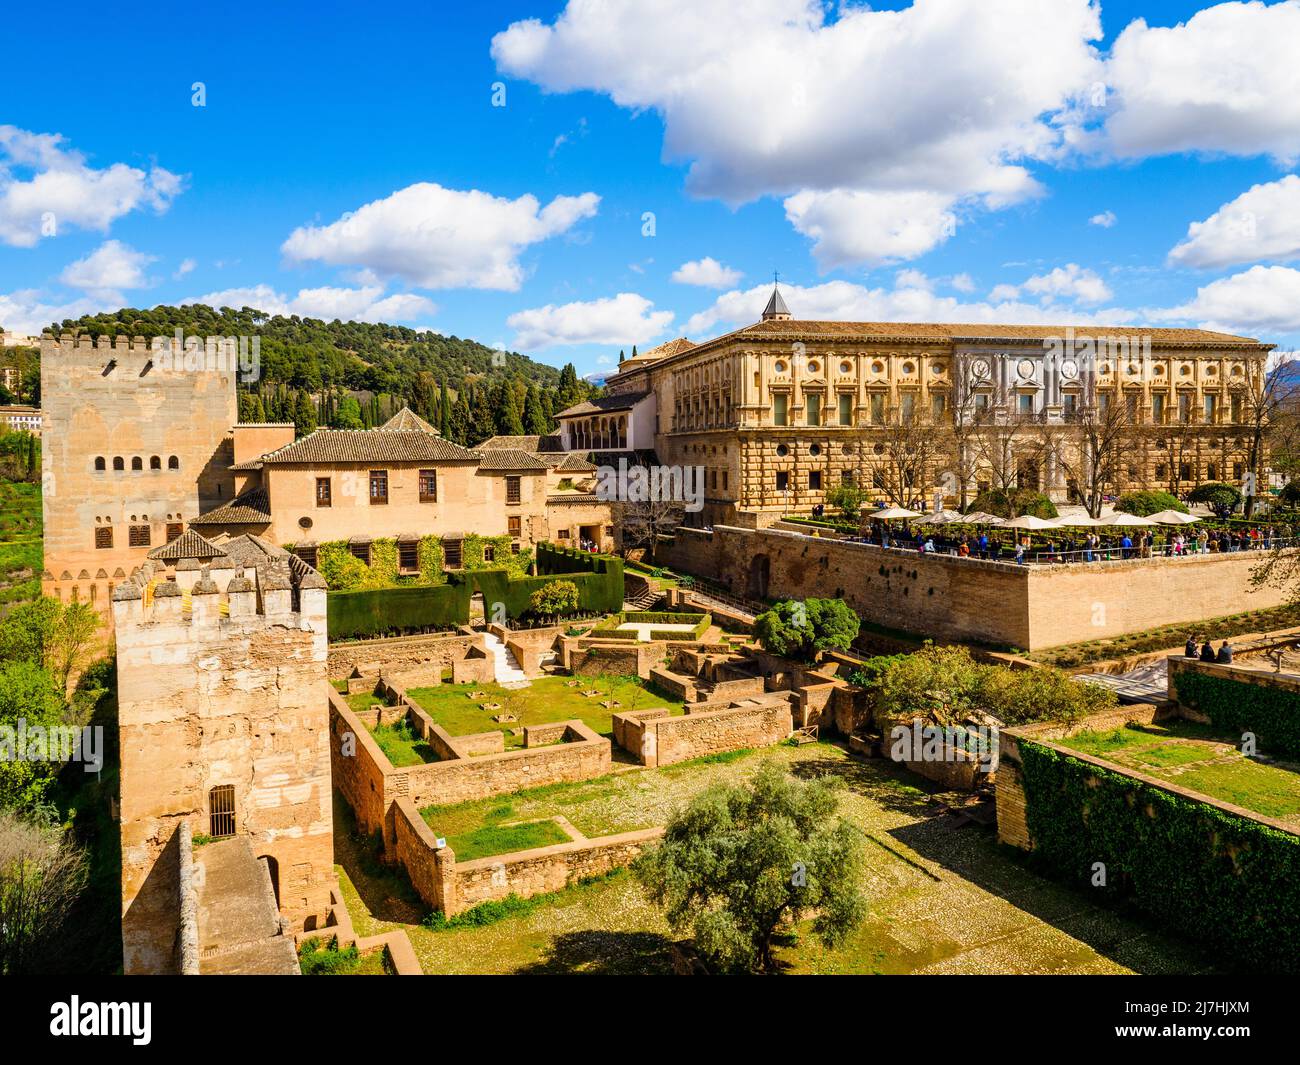 Vista dalla Torre del Cubo. Il Palazzo di Carlo V si trova sulla sinistra - Alhambra Complex - Granada, Spagna Foto Stock